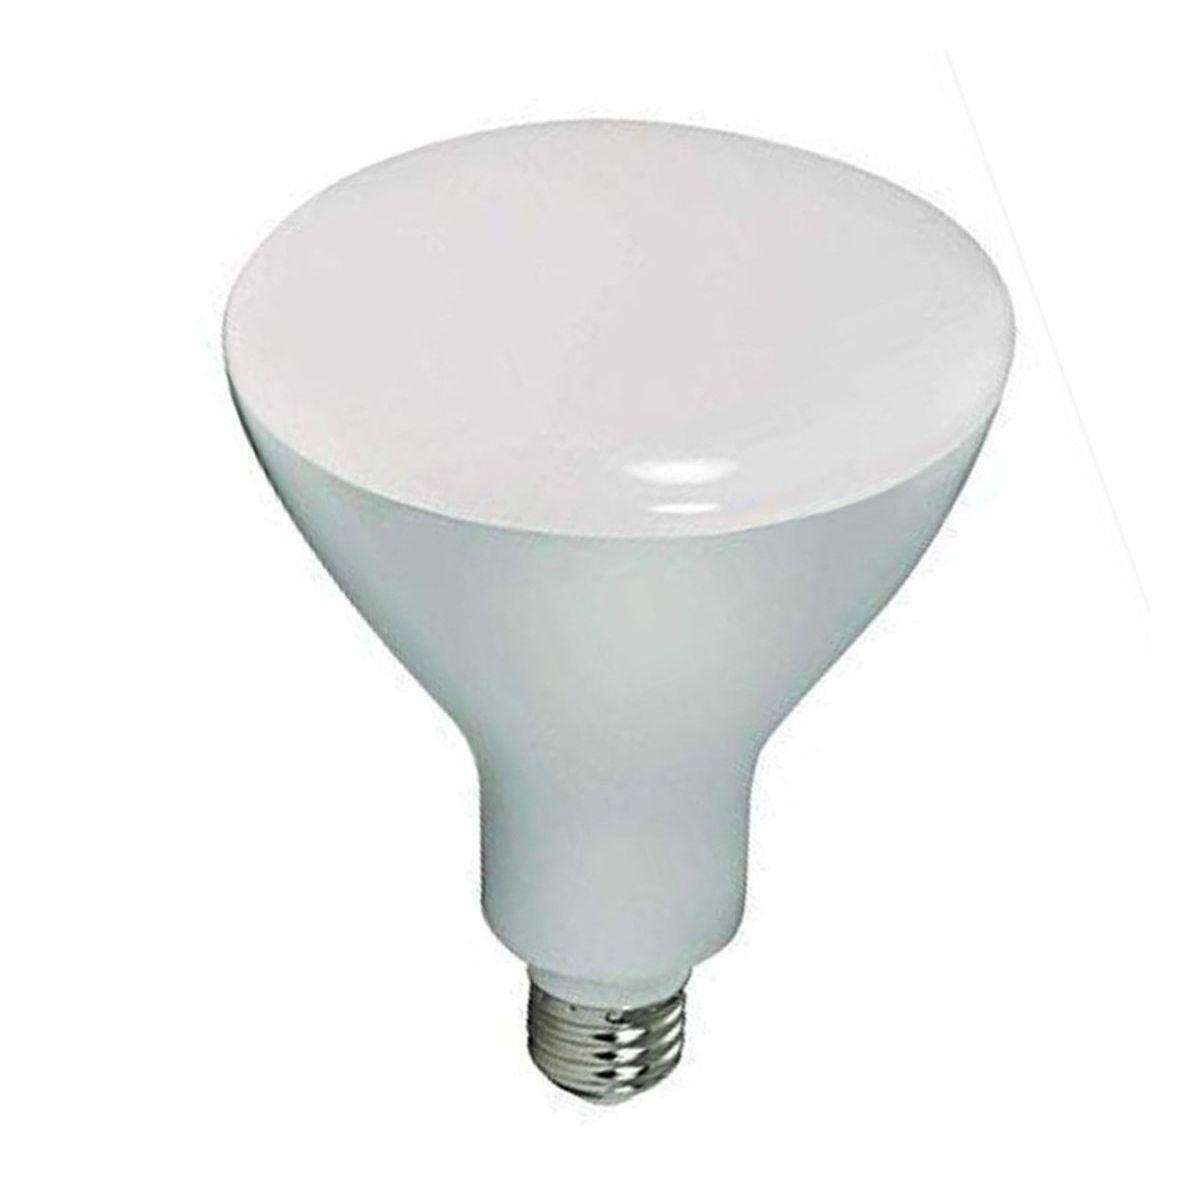 LED R40/BR40 Reflector bulb, 17 watt, 1075 Lumens, 3000K, E26 Medium Base, 105 Deg. Flood, Dimmable - Bees Lighting